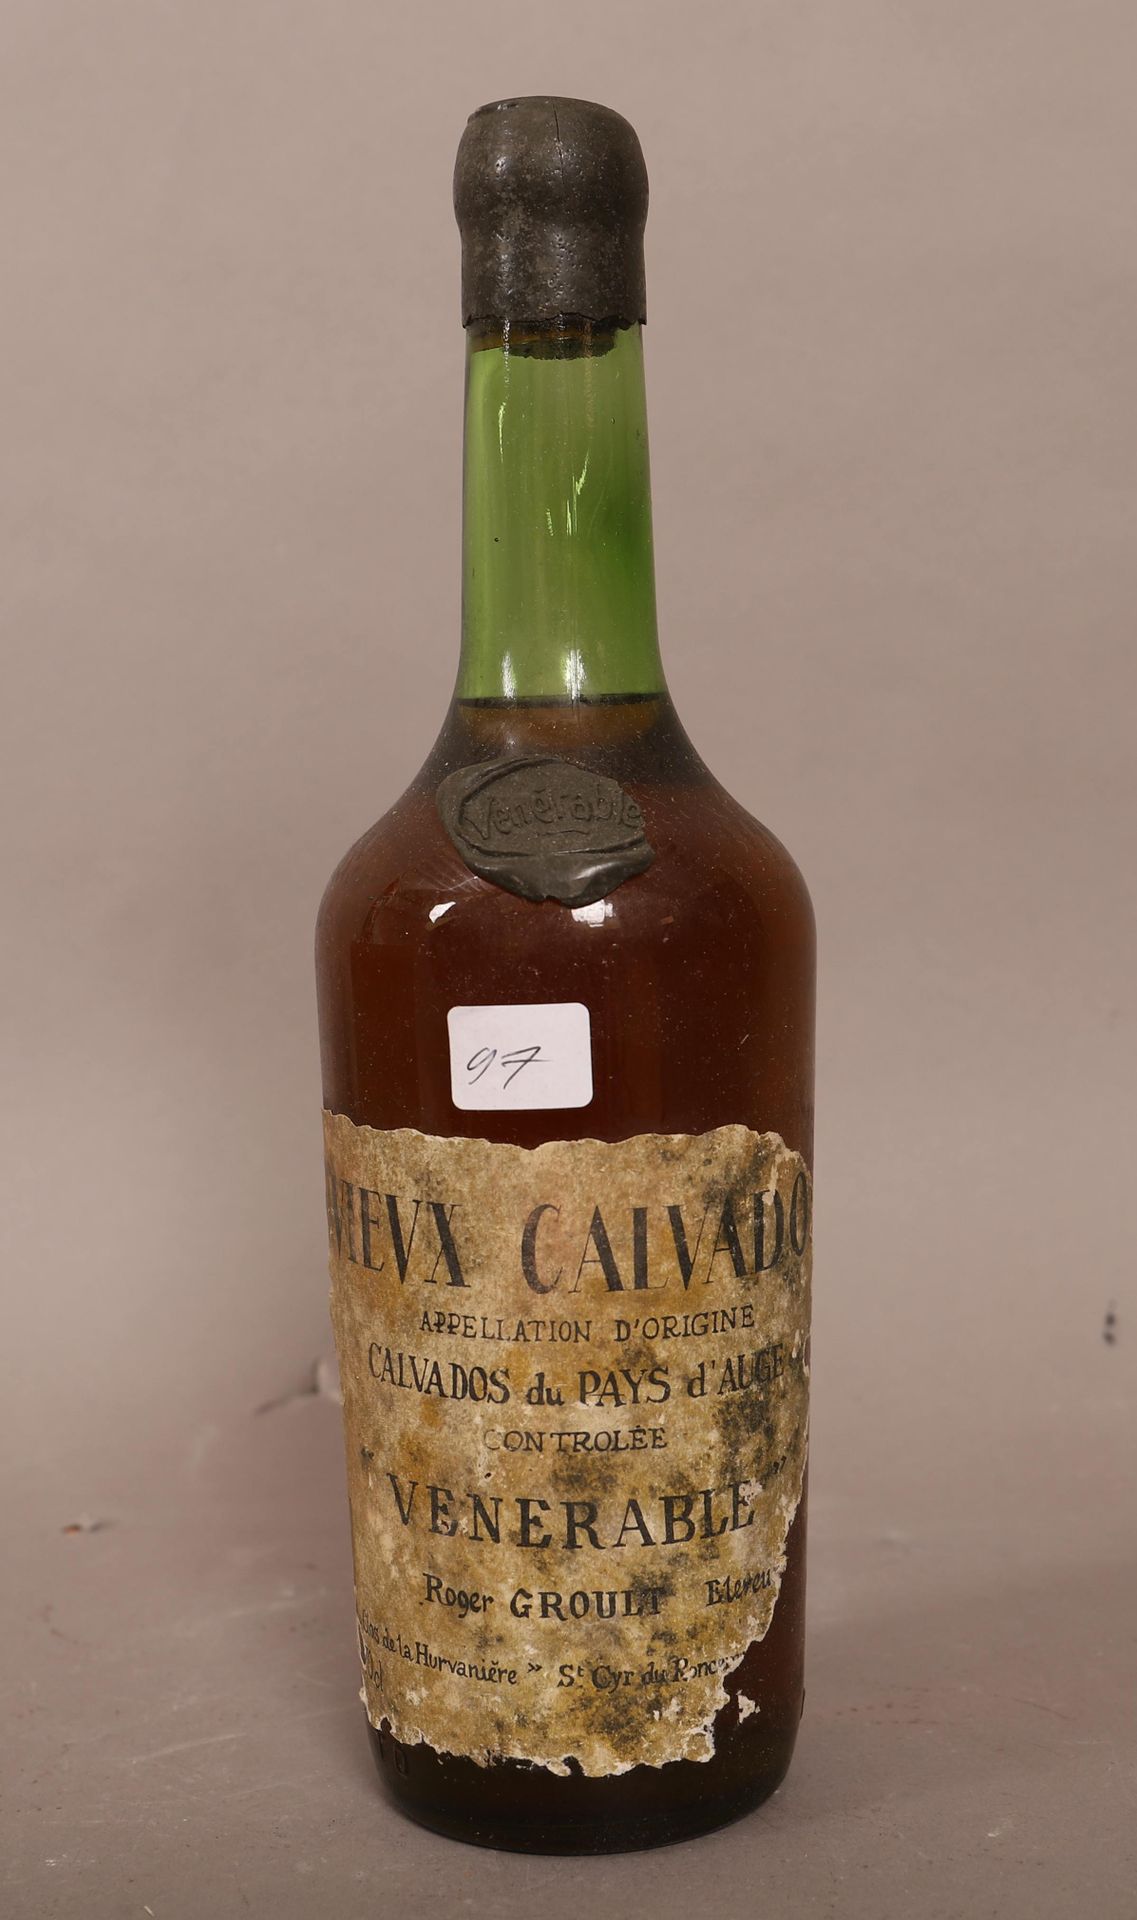 Null Vieux Calvados (x1)

Vénérable

Pays d'Auge

0,70L